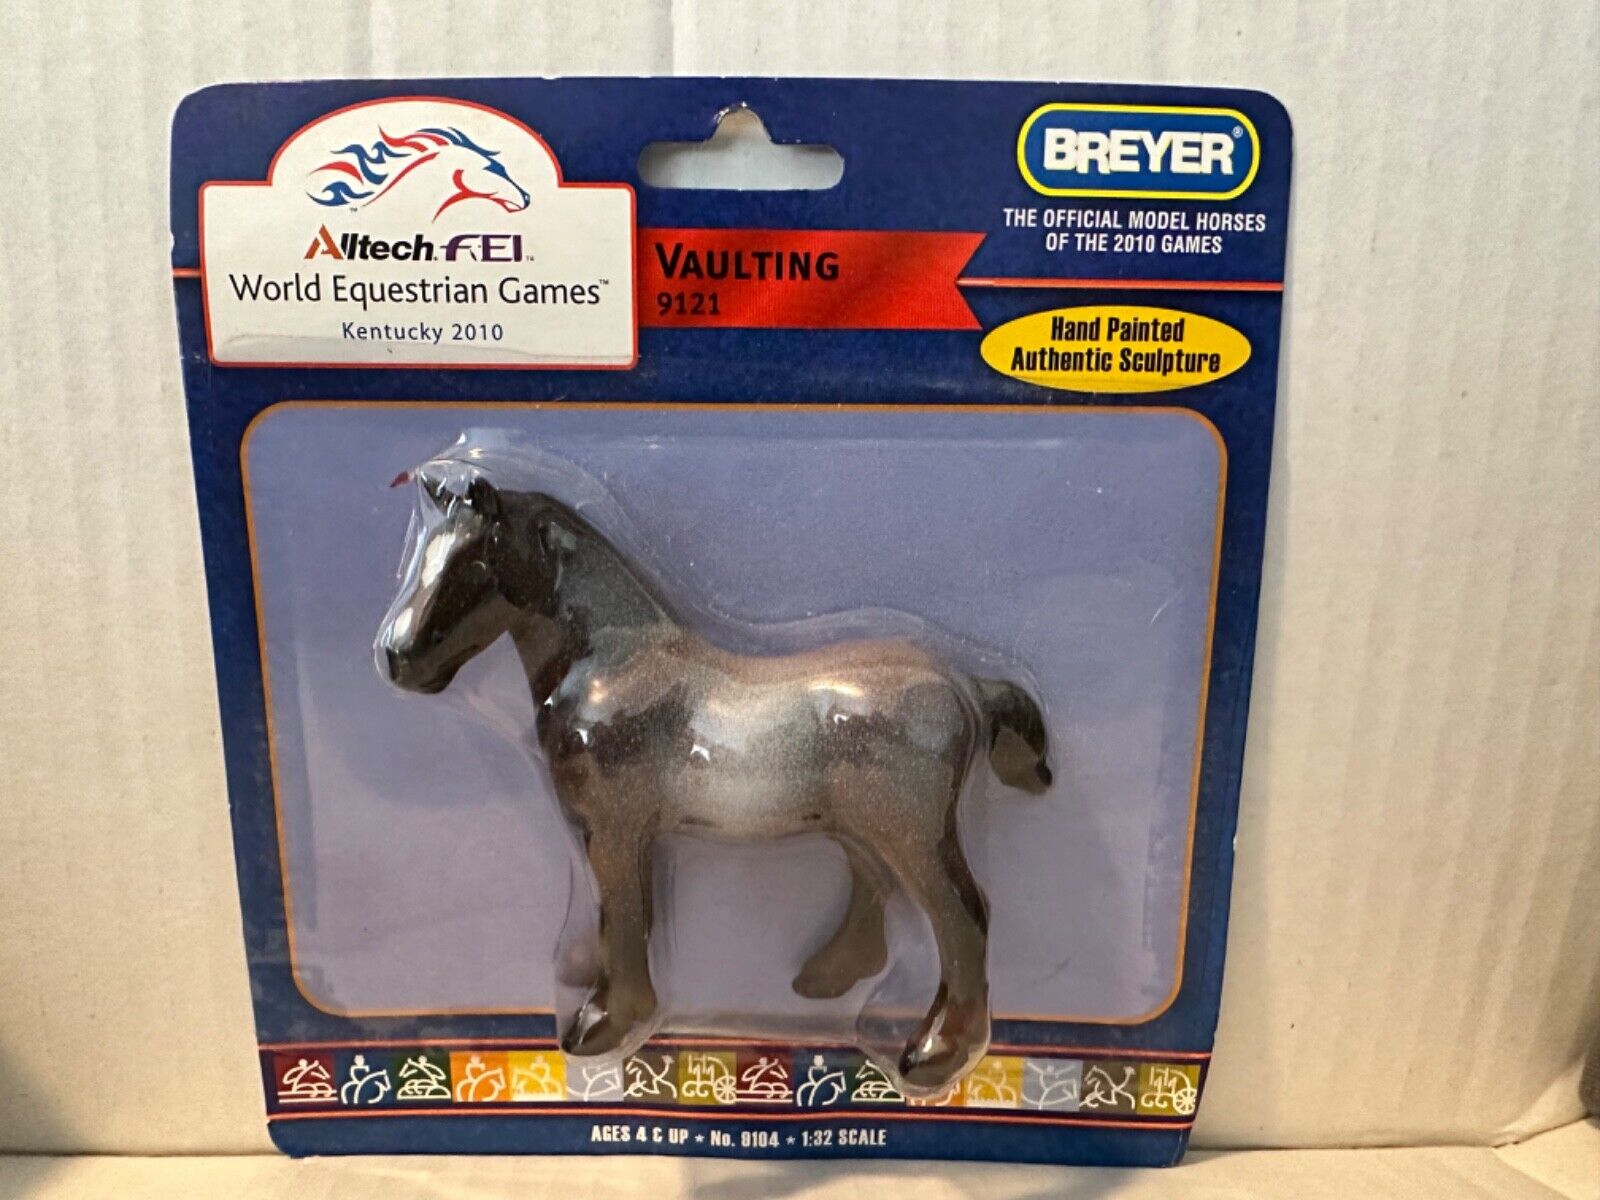 2010 Breyer Allltech FEI World Equestrian Games Kentucky Vaulting Horse 9121 NEW